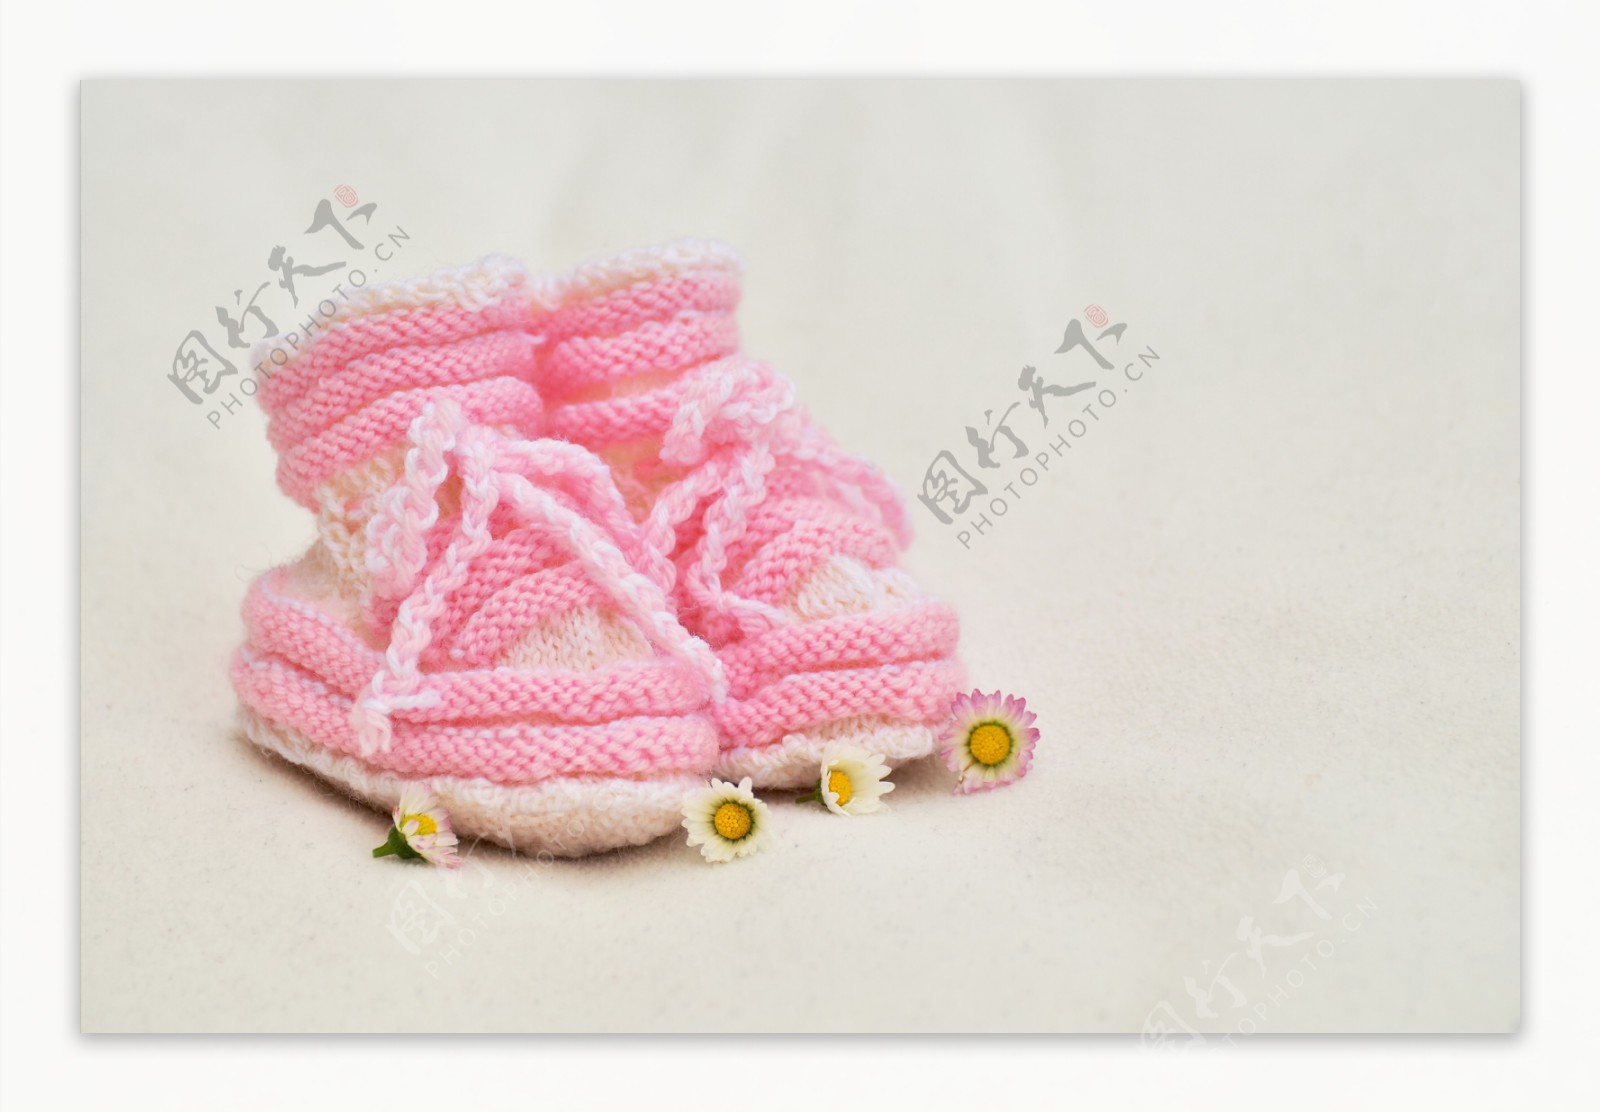 针织婴儿鞋图片